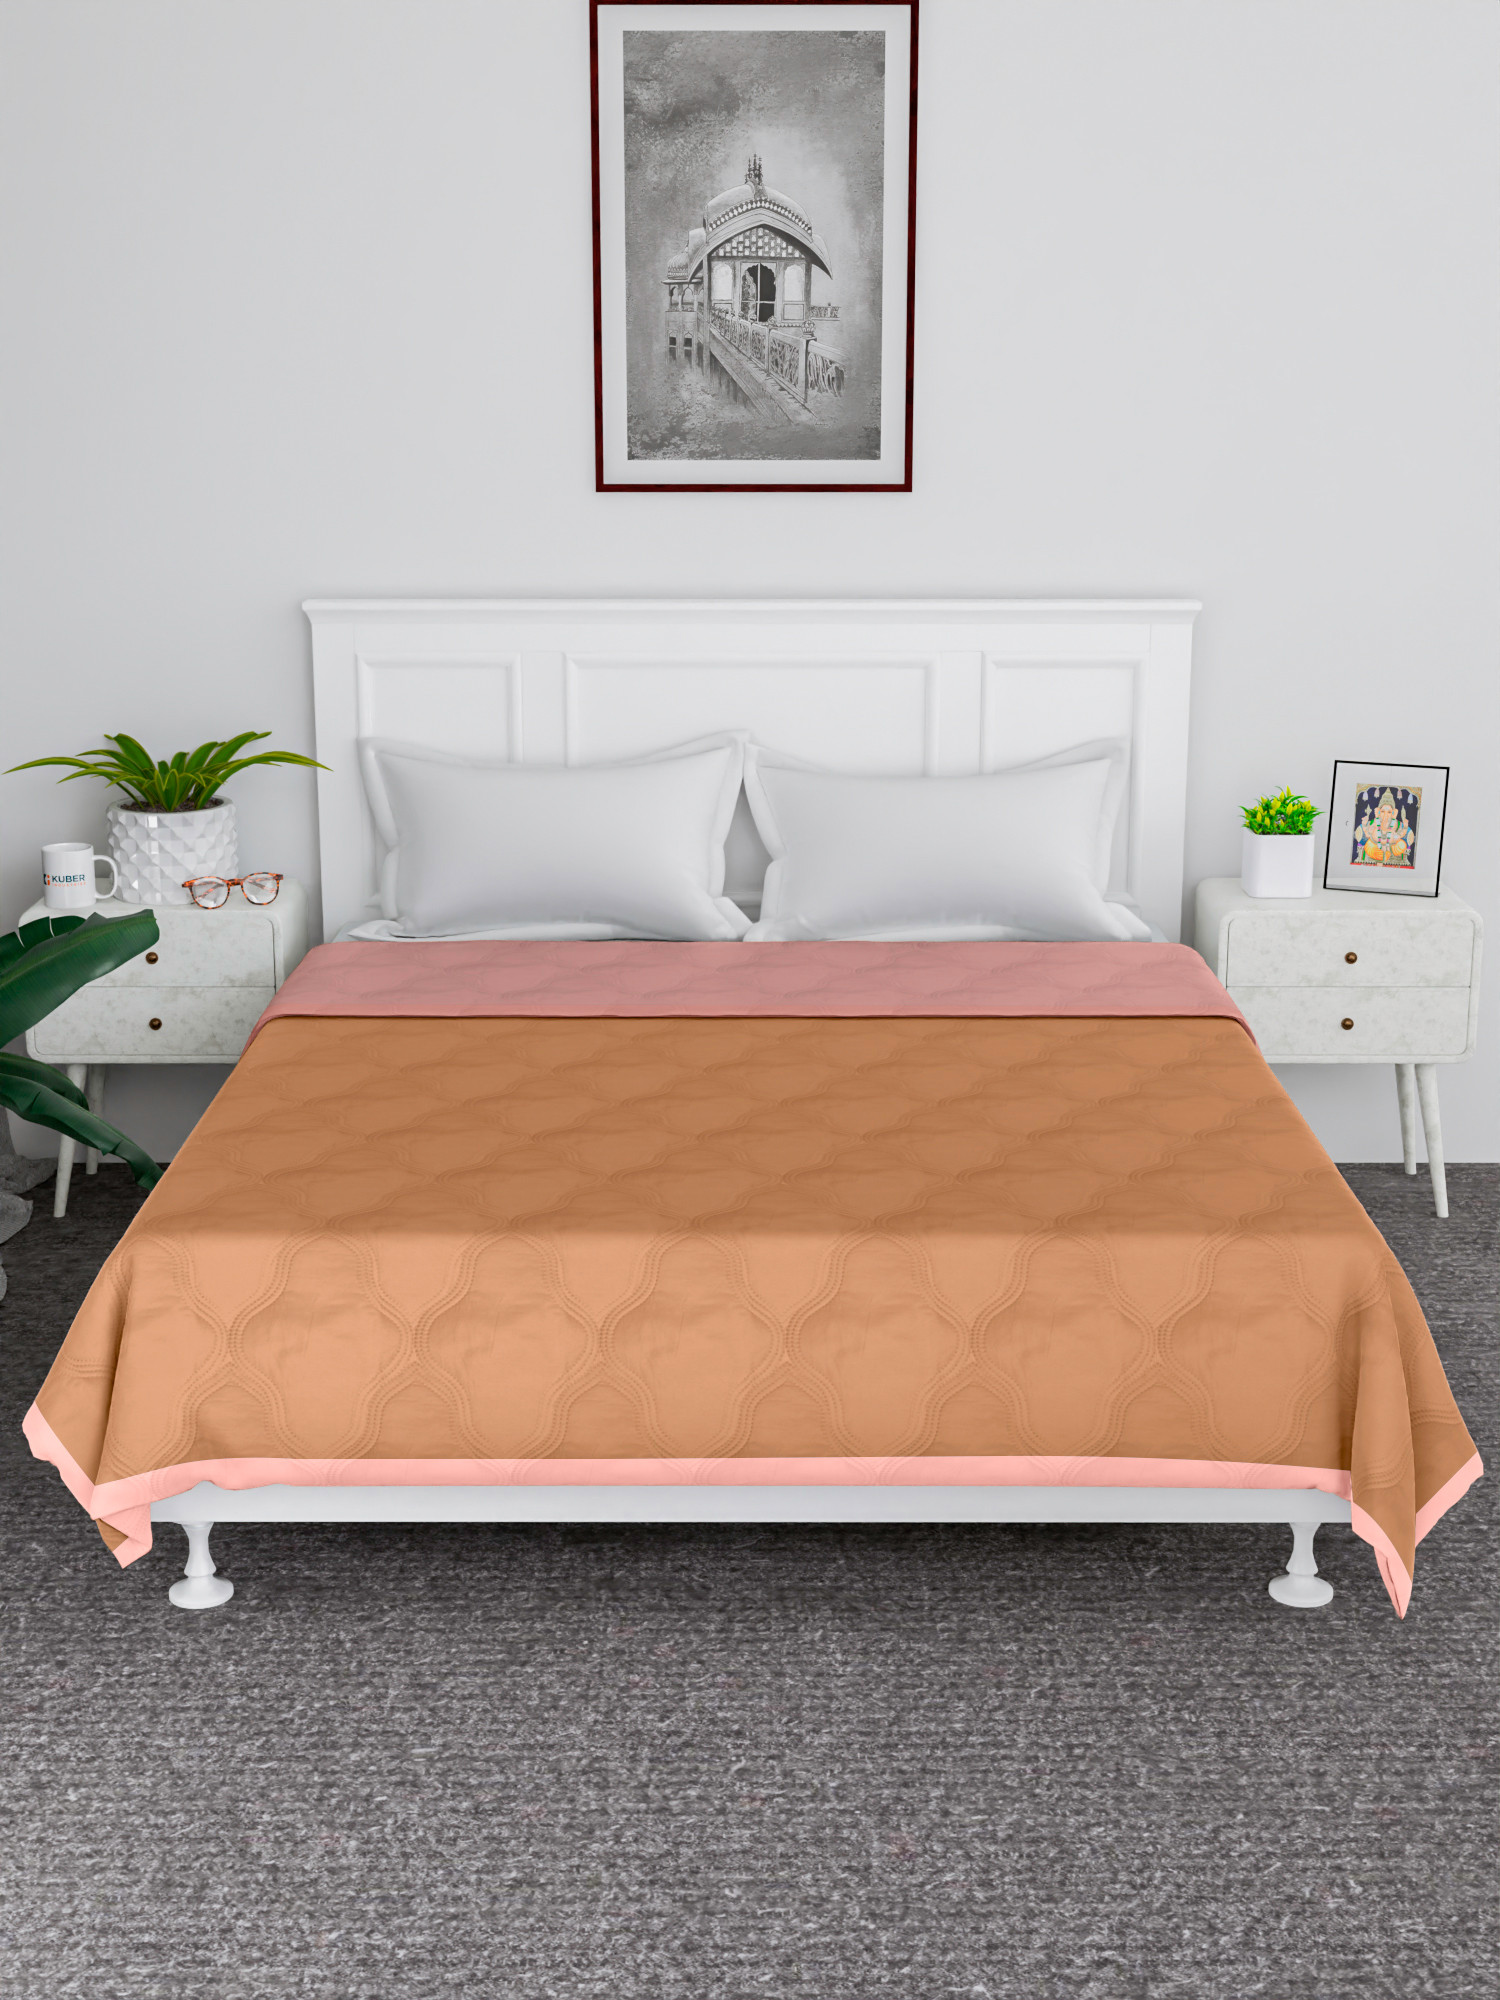 Kuber Industries Comforter | Microfiber Blanket for Summer | Blanket for Winter | Quilted Blanket Cover | Reversible Comforter | Blanket for Double Bed | Beige